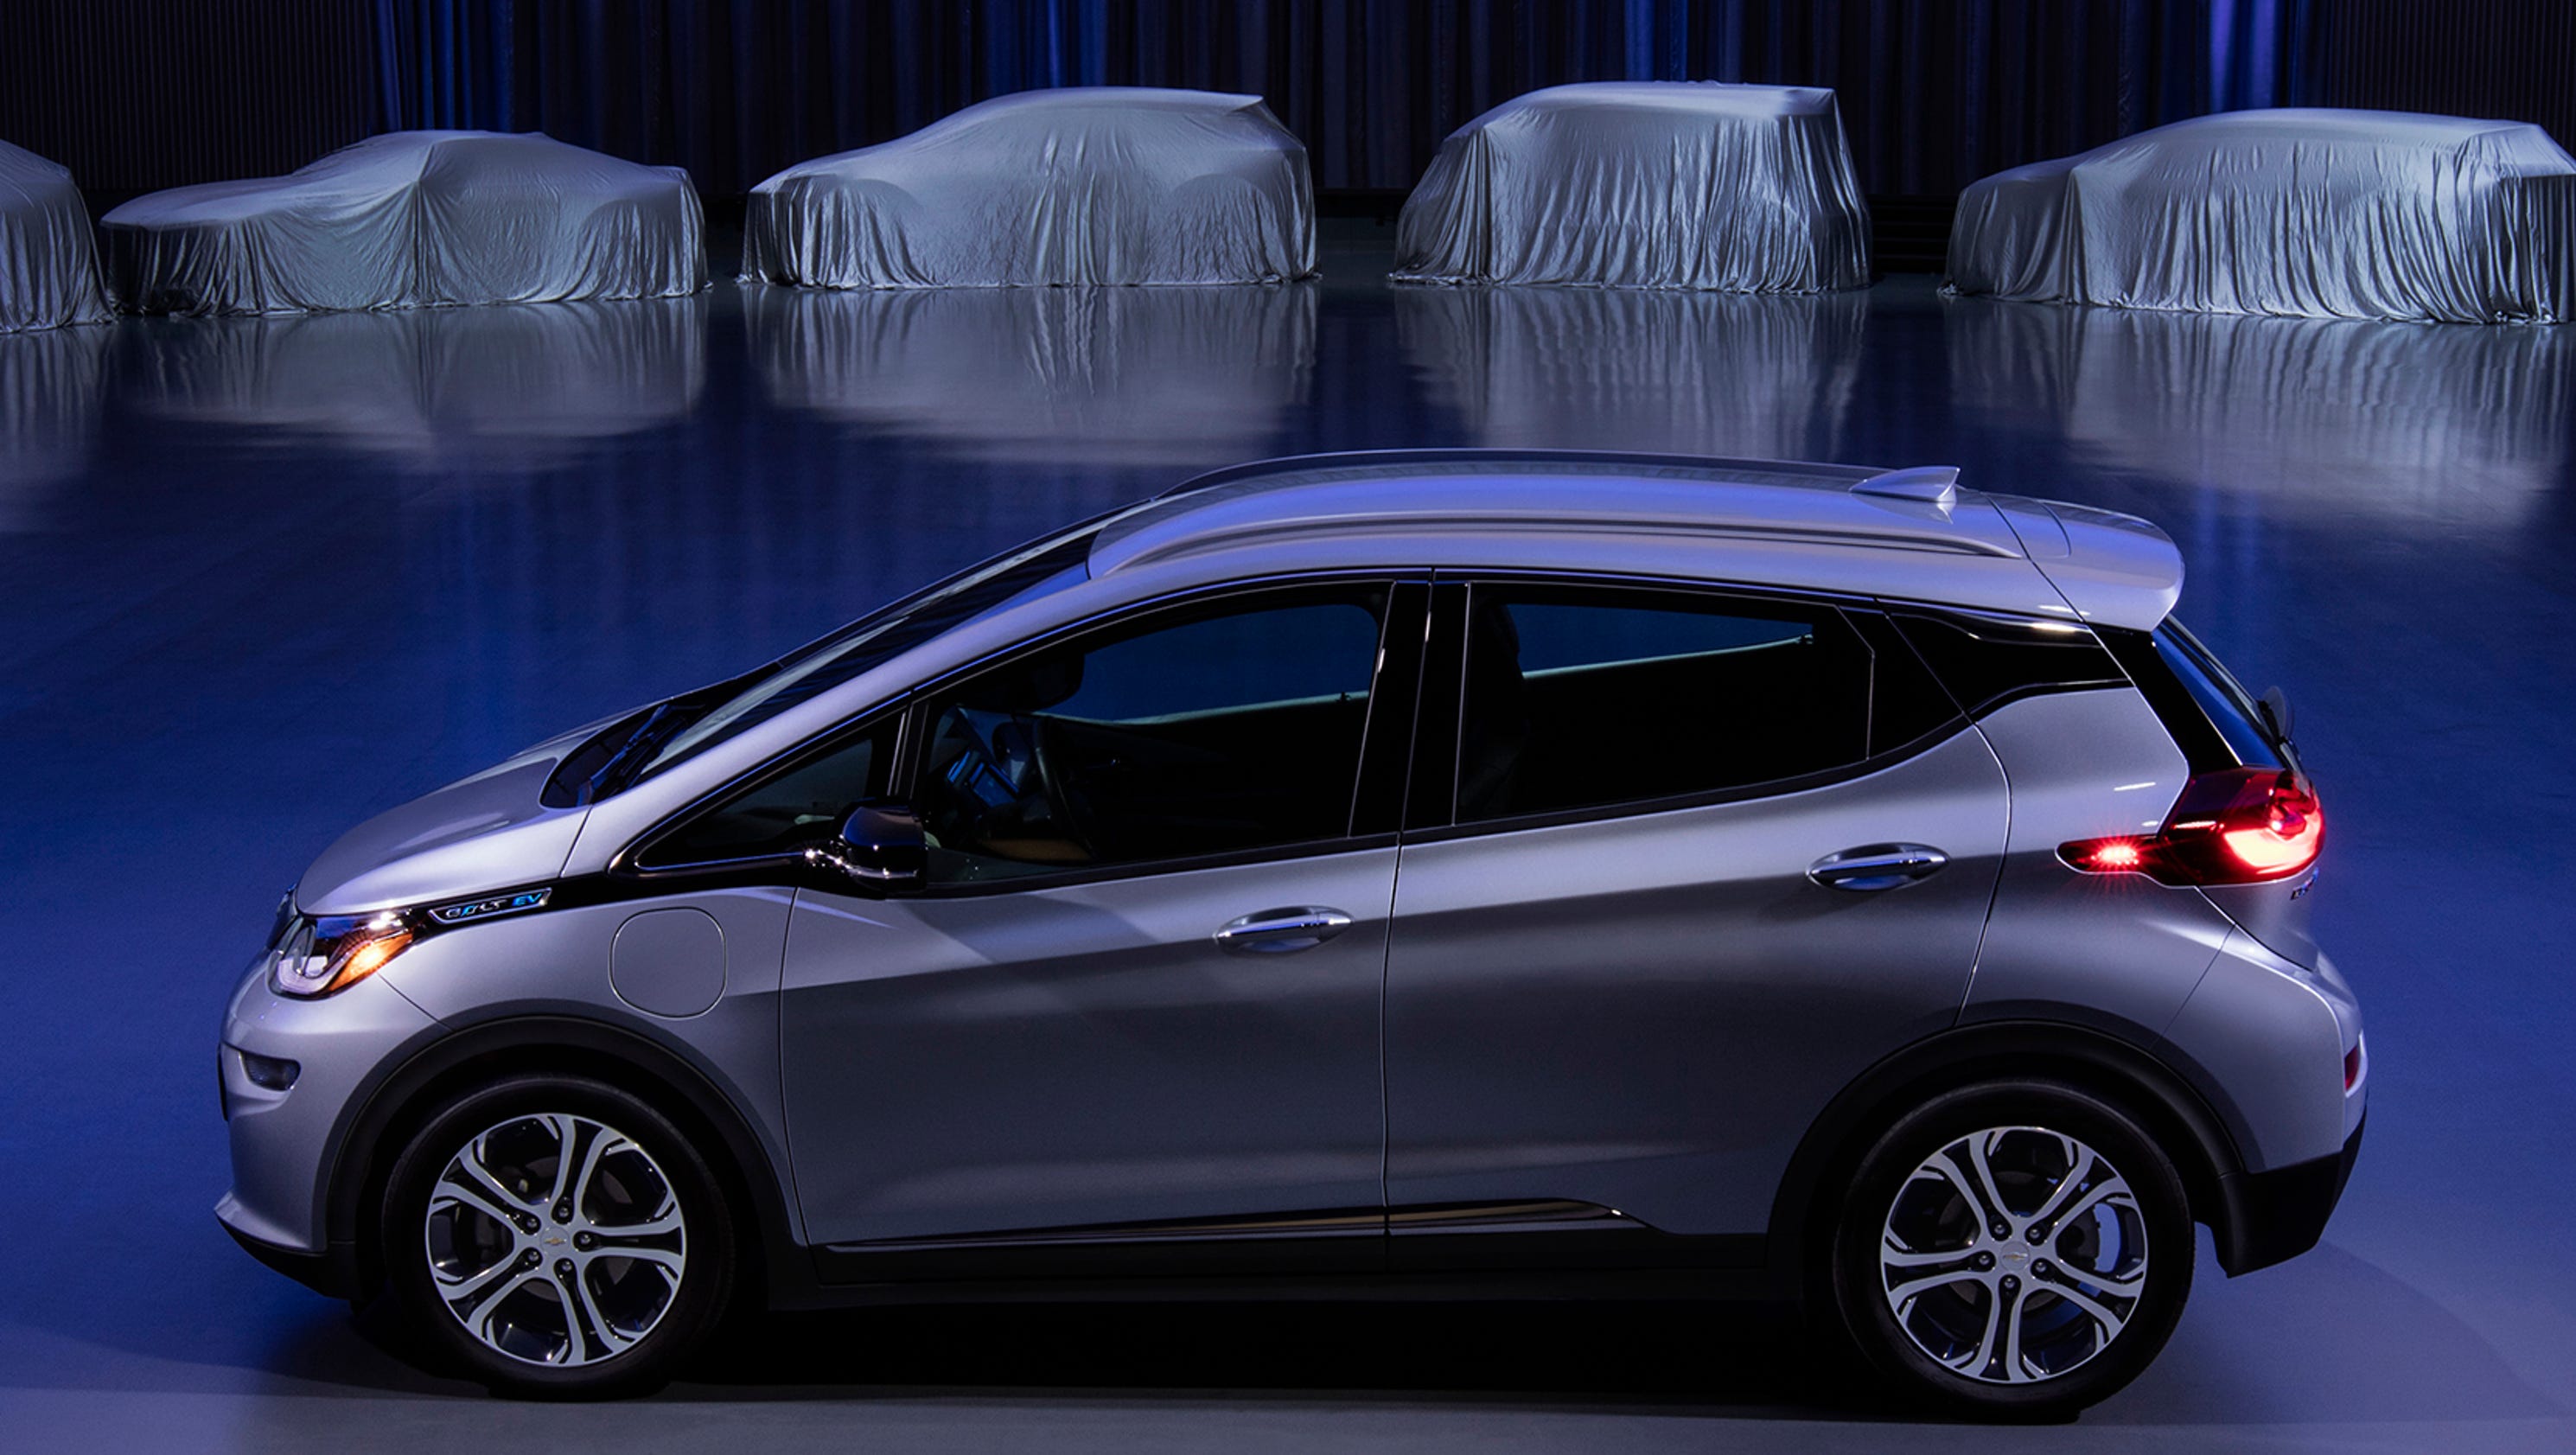 GM plans 20plus new electric vehicles, plus fuel cell production